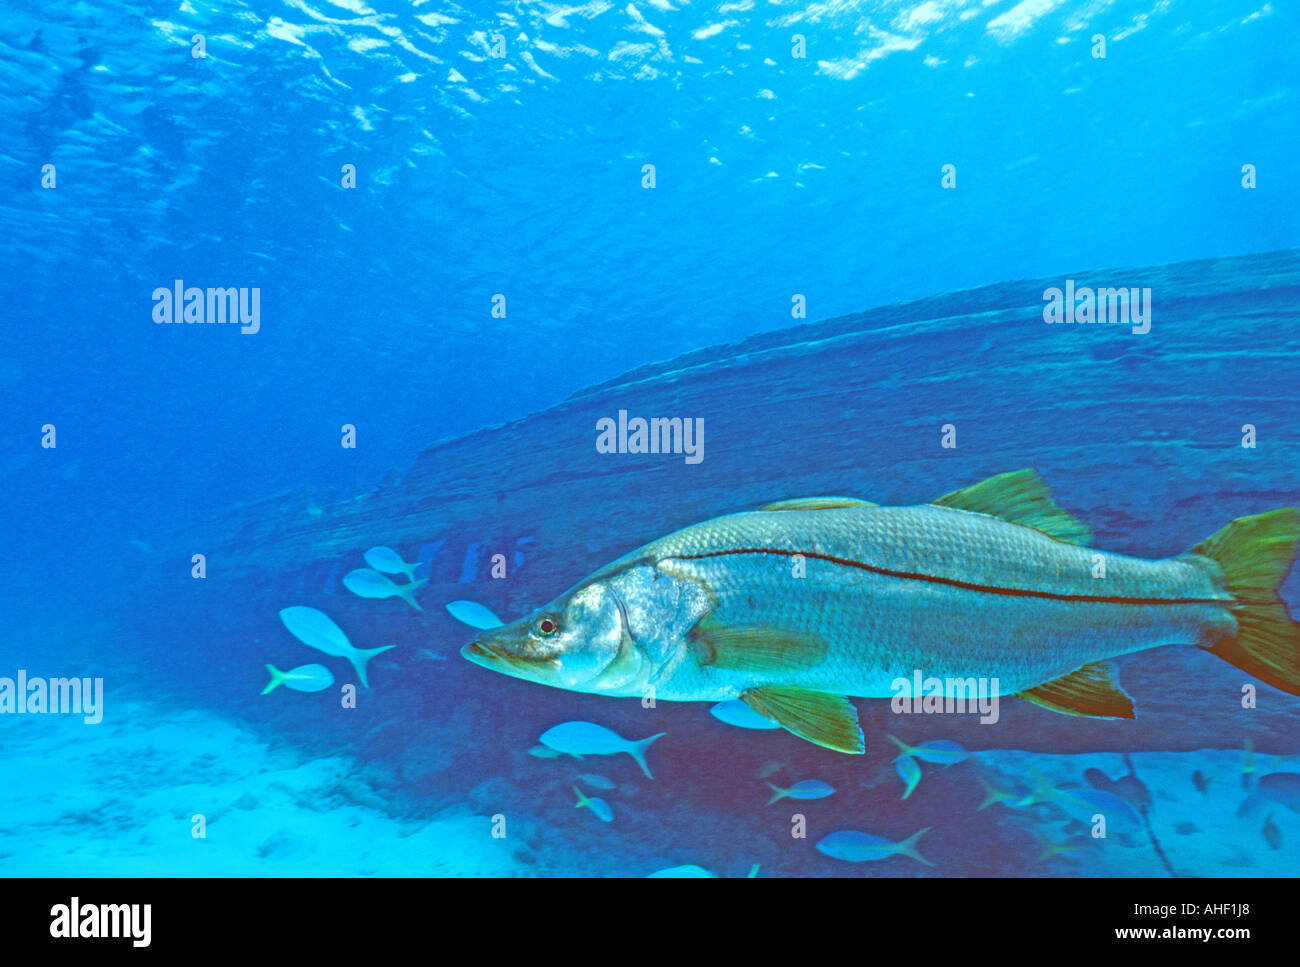 Fishing snook gamefish underwater Stock Photo